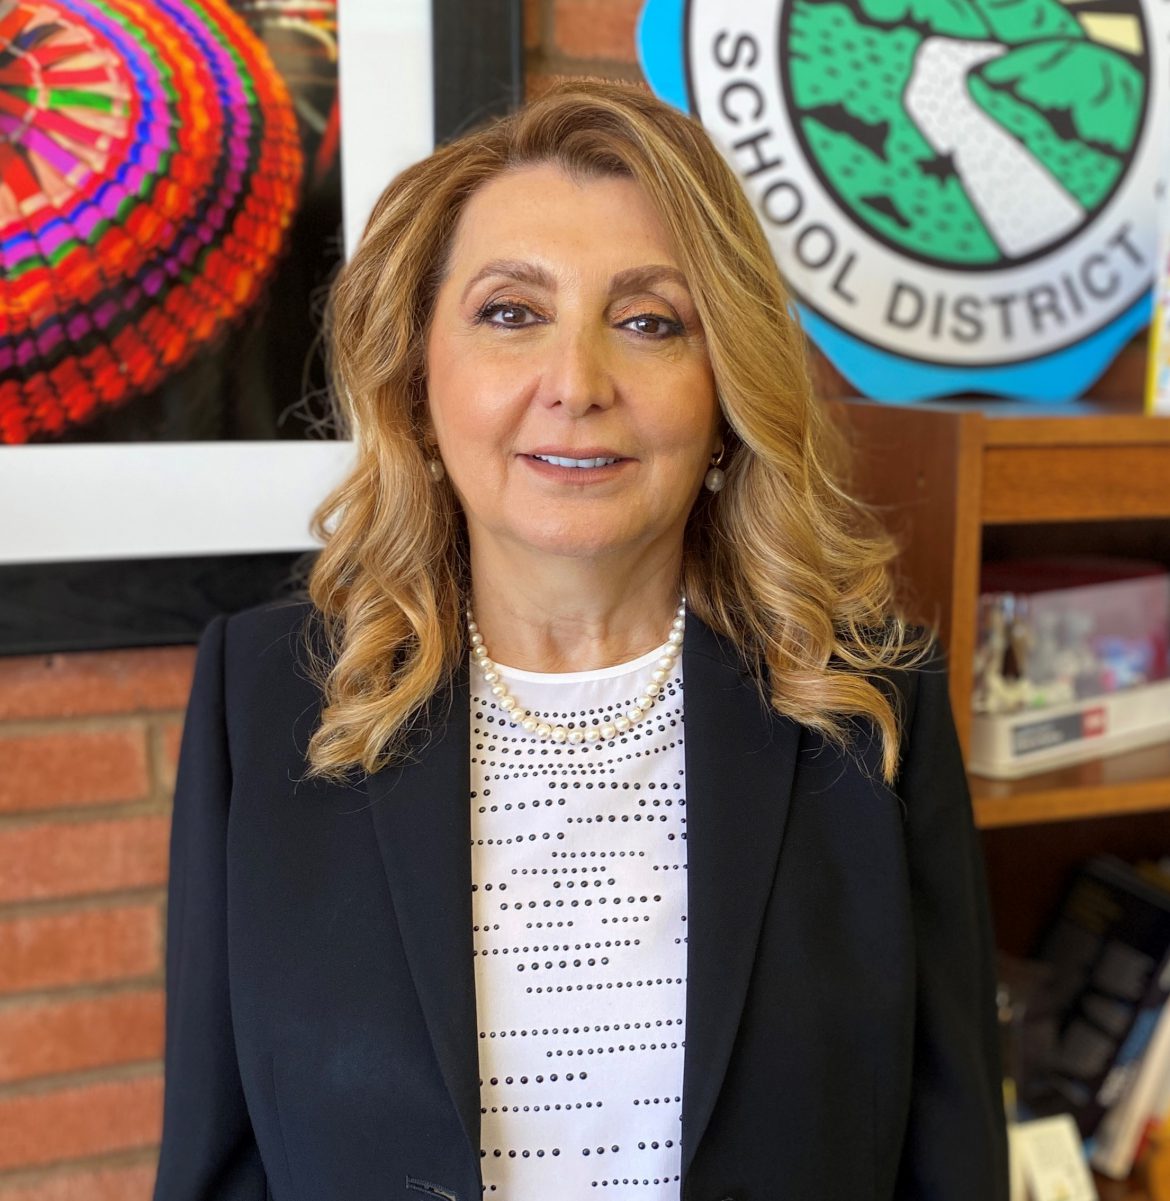 Superintendent Dr. Vivian Ekchian Announces Retirement